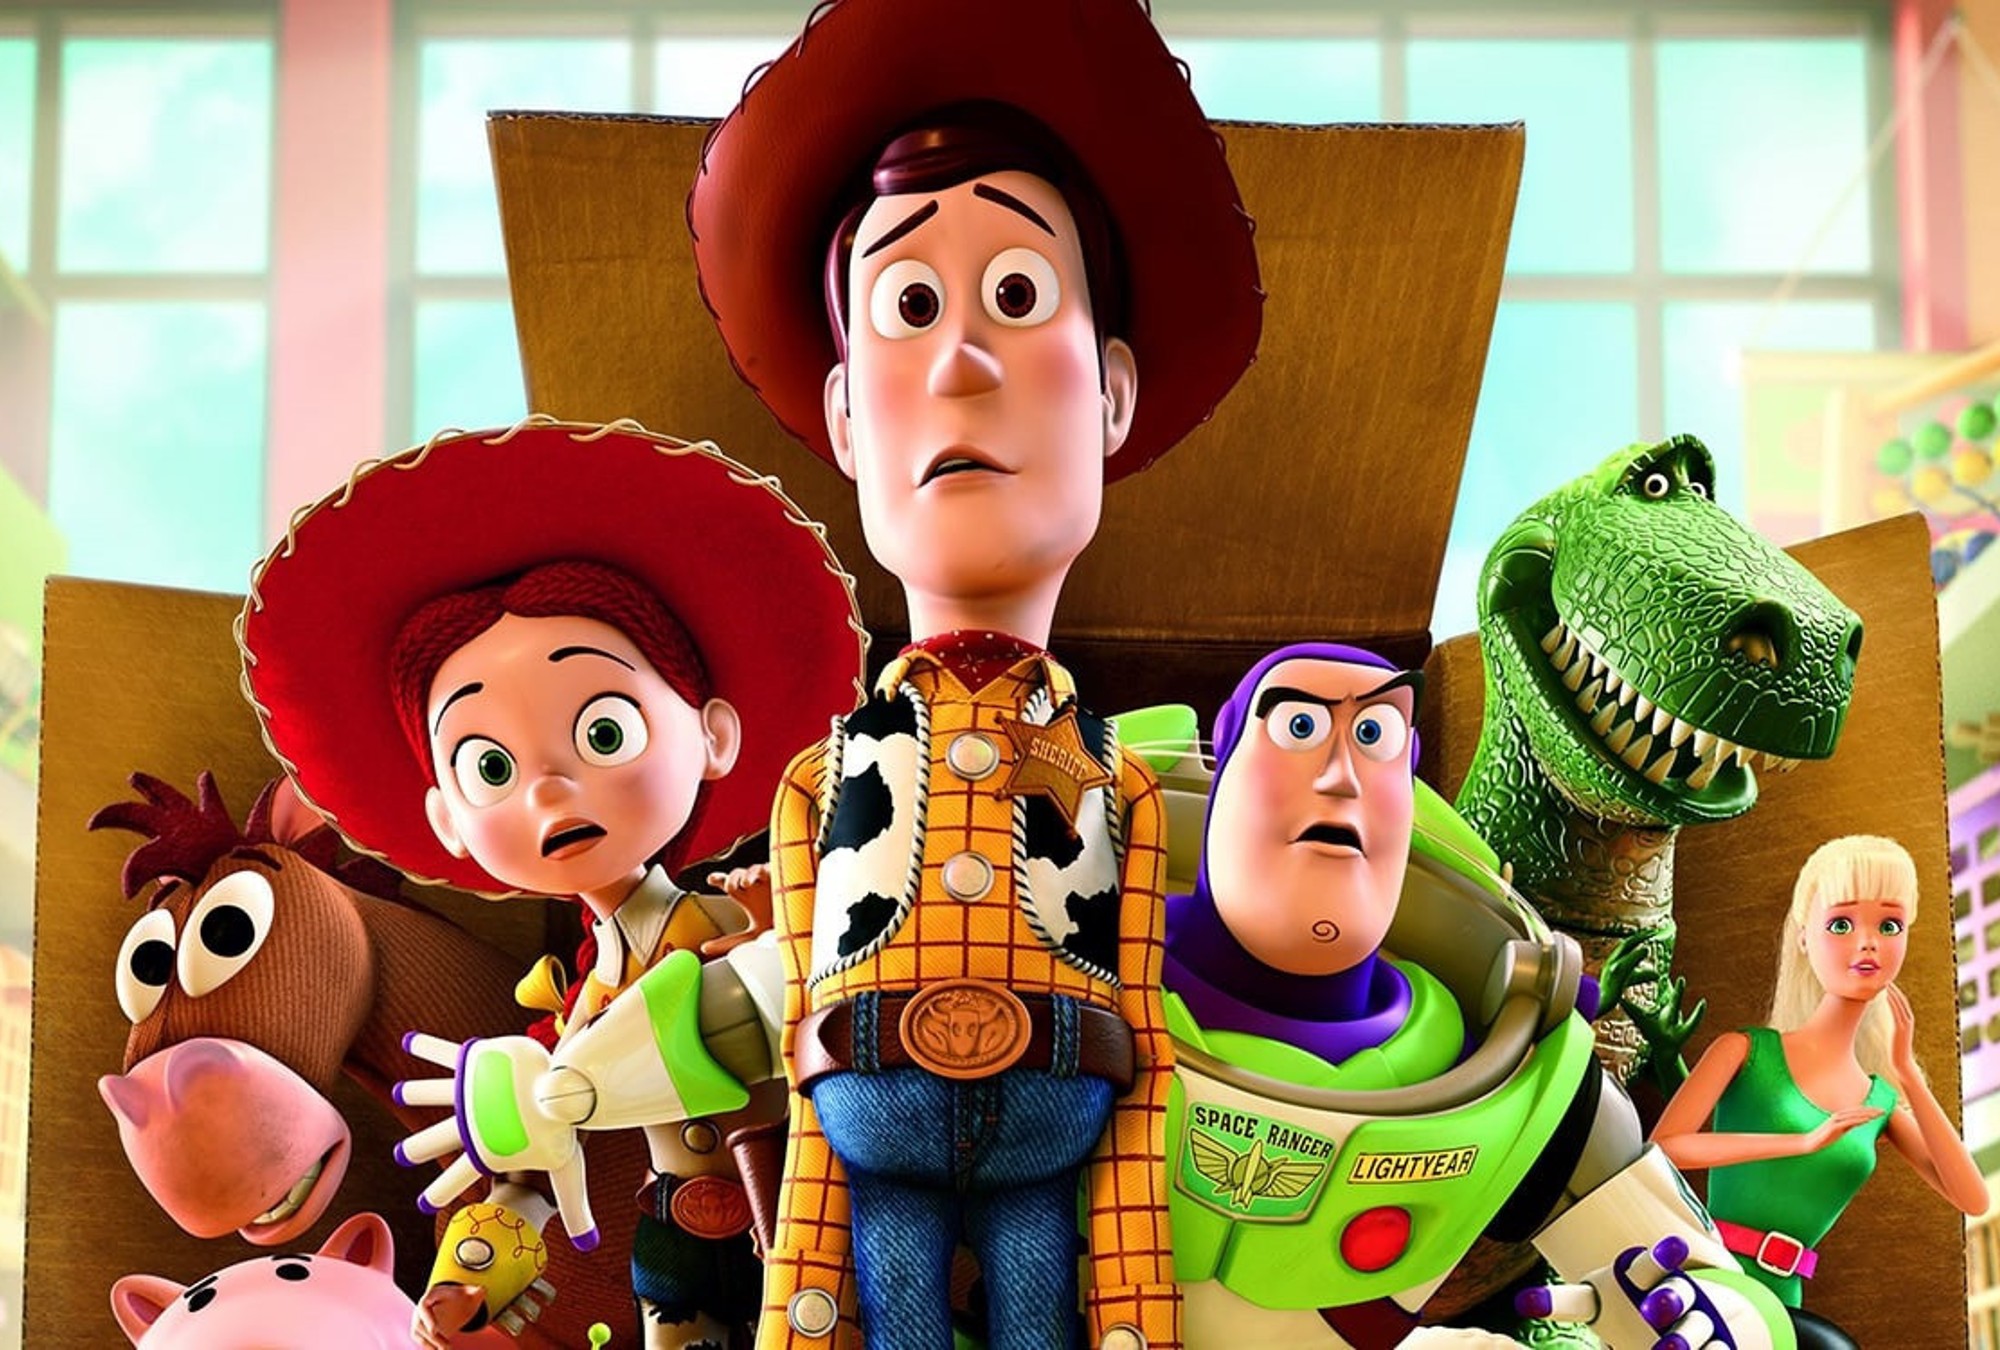 Adventure story 3. История игрушек 3 большой побег. История игрушек: большой побег / Toy story 3. Disney Pixar Toy story 3.